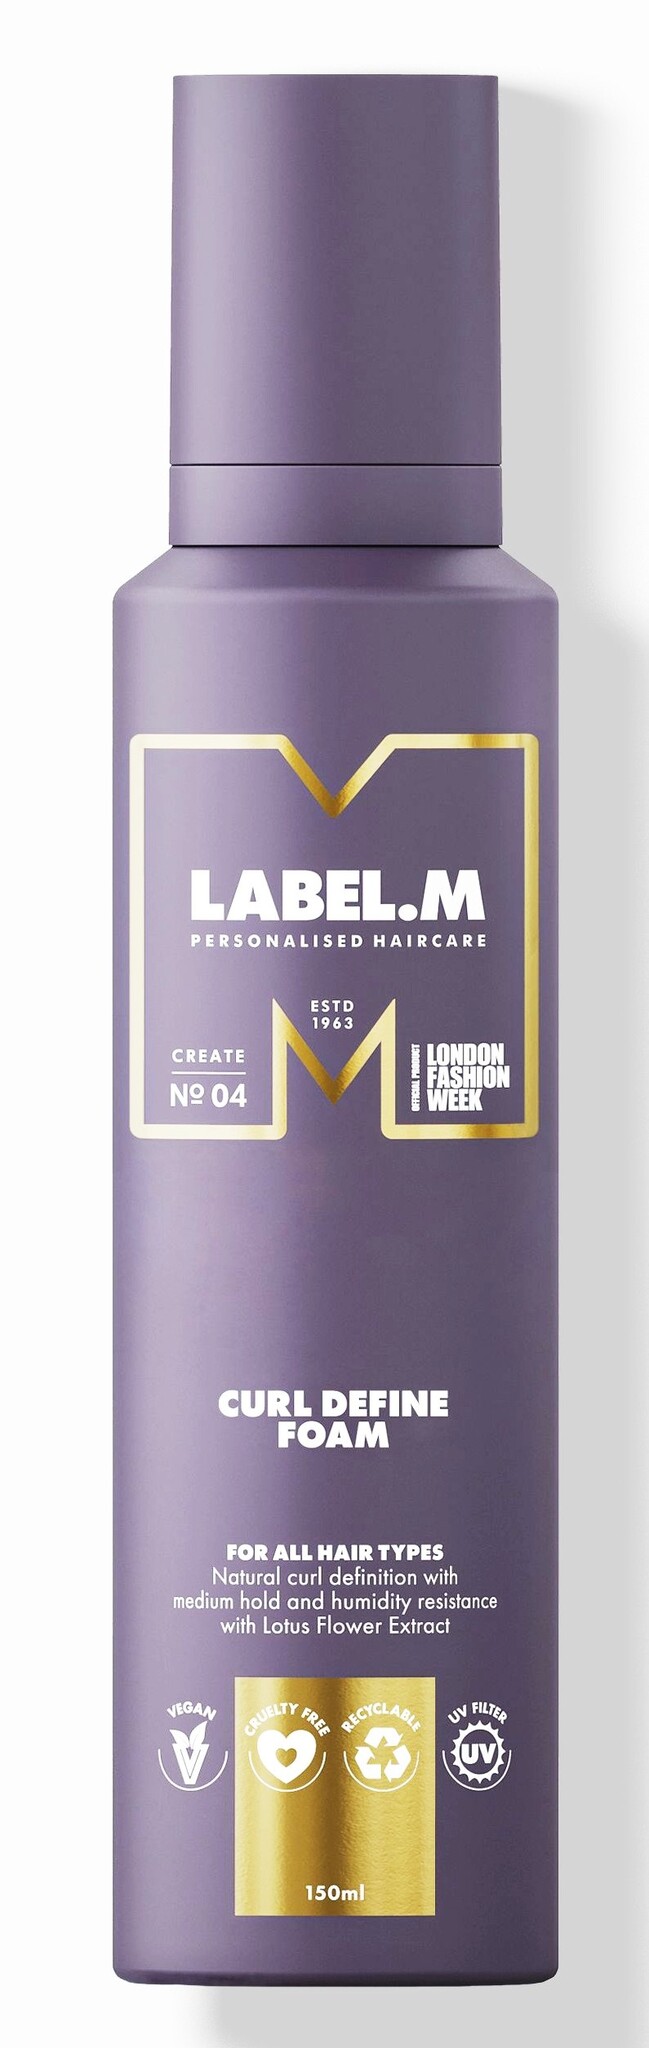 Label.m Curl Define Foam 150ml